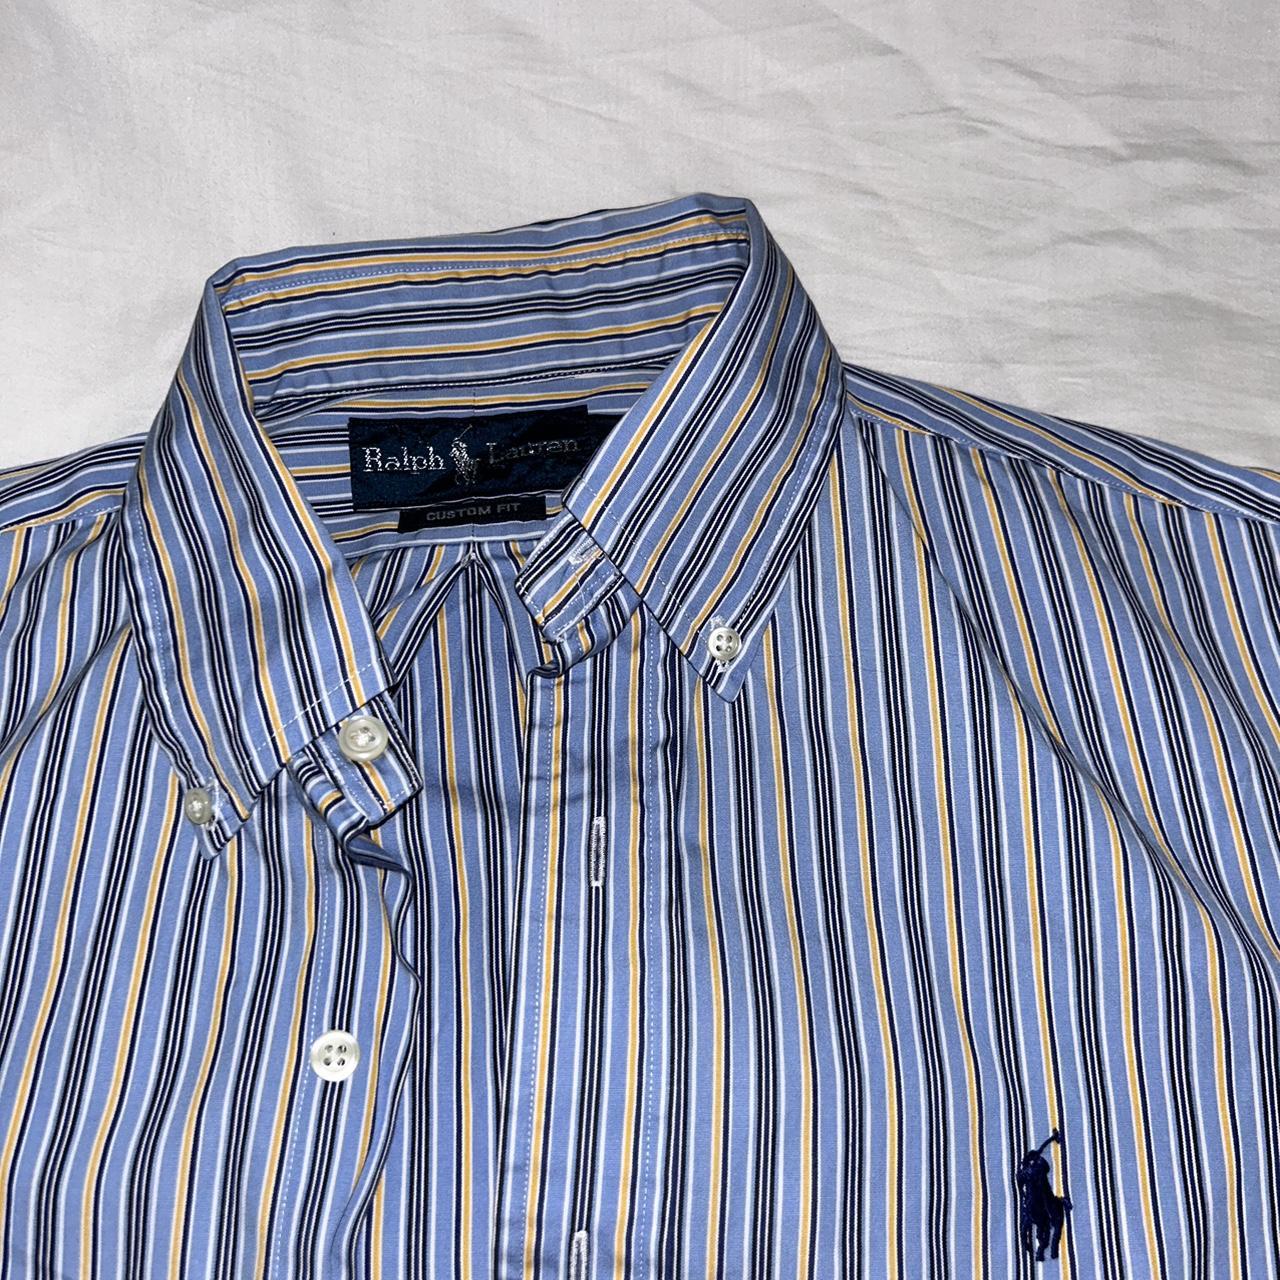 S Polo Ralph Lauren striped button down shirt - Depop